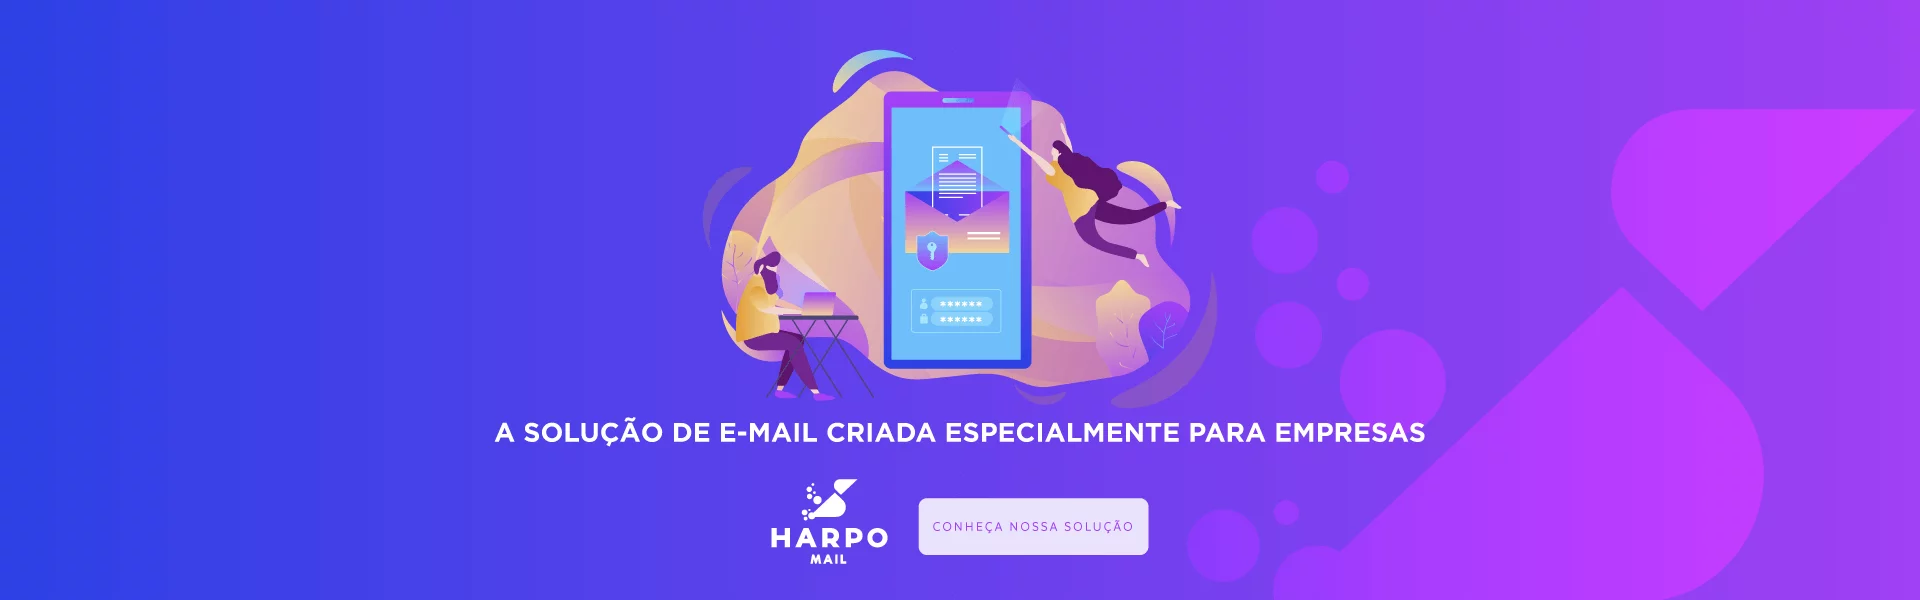 super-banner-harpo-mail